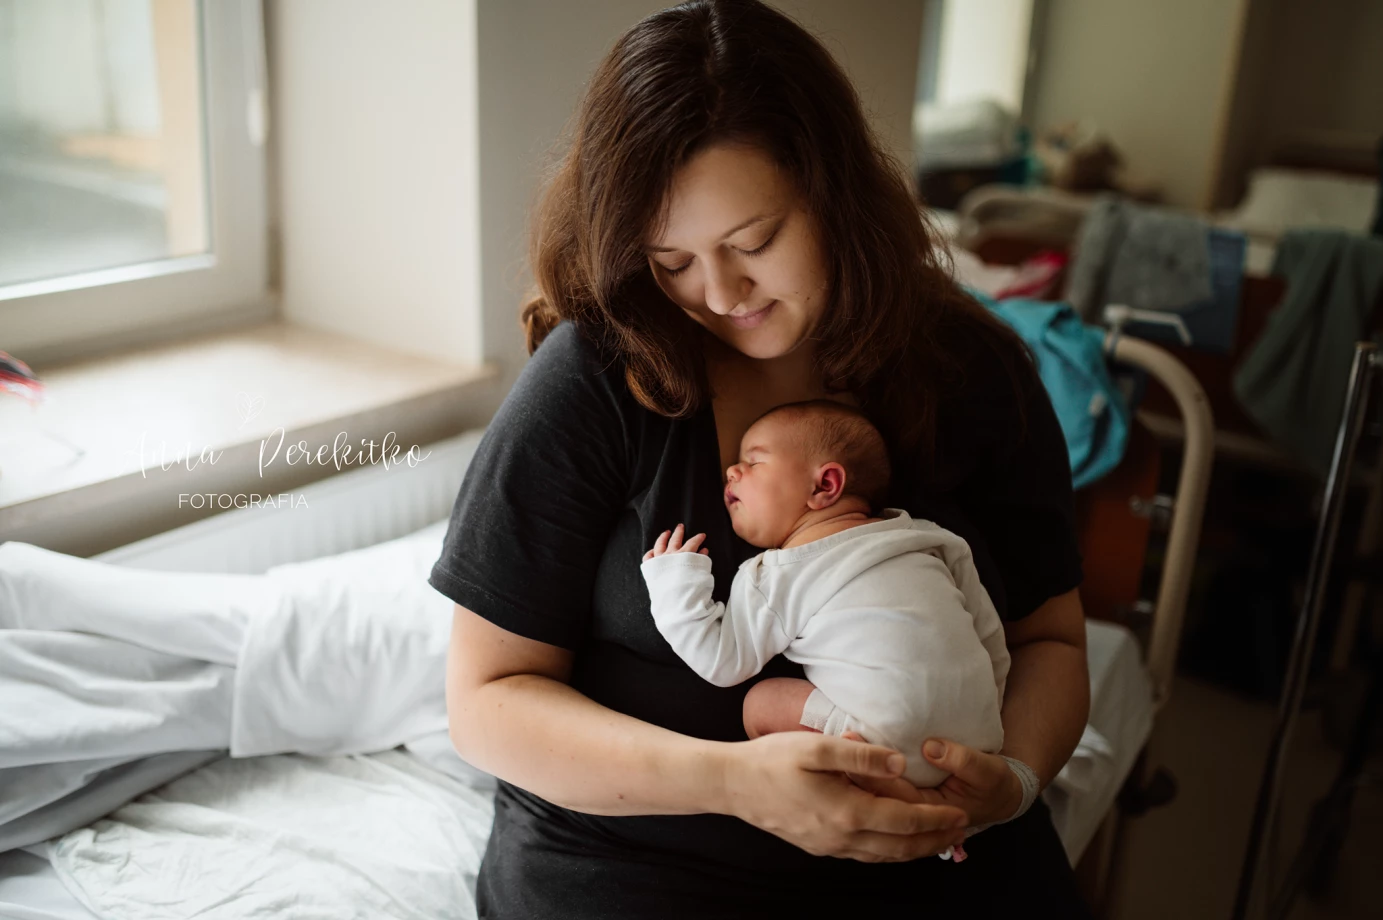 fotograf warszawa anna-perekitko portfolio zdjecia noworodkow sesje noworodkowe niemowlę